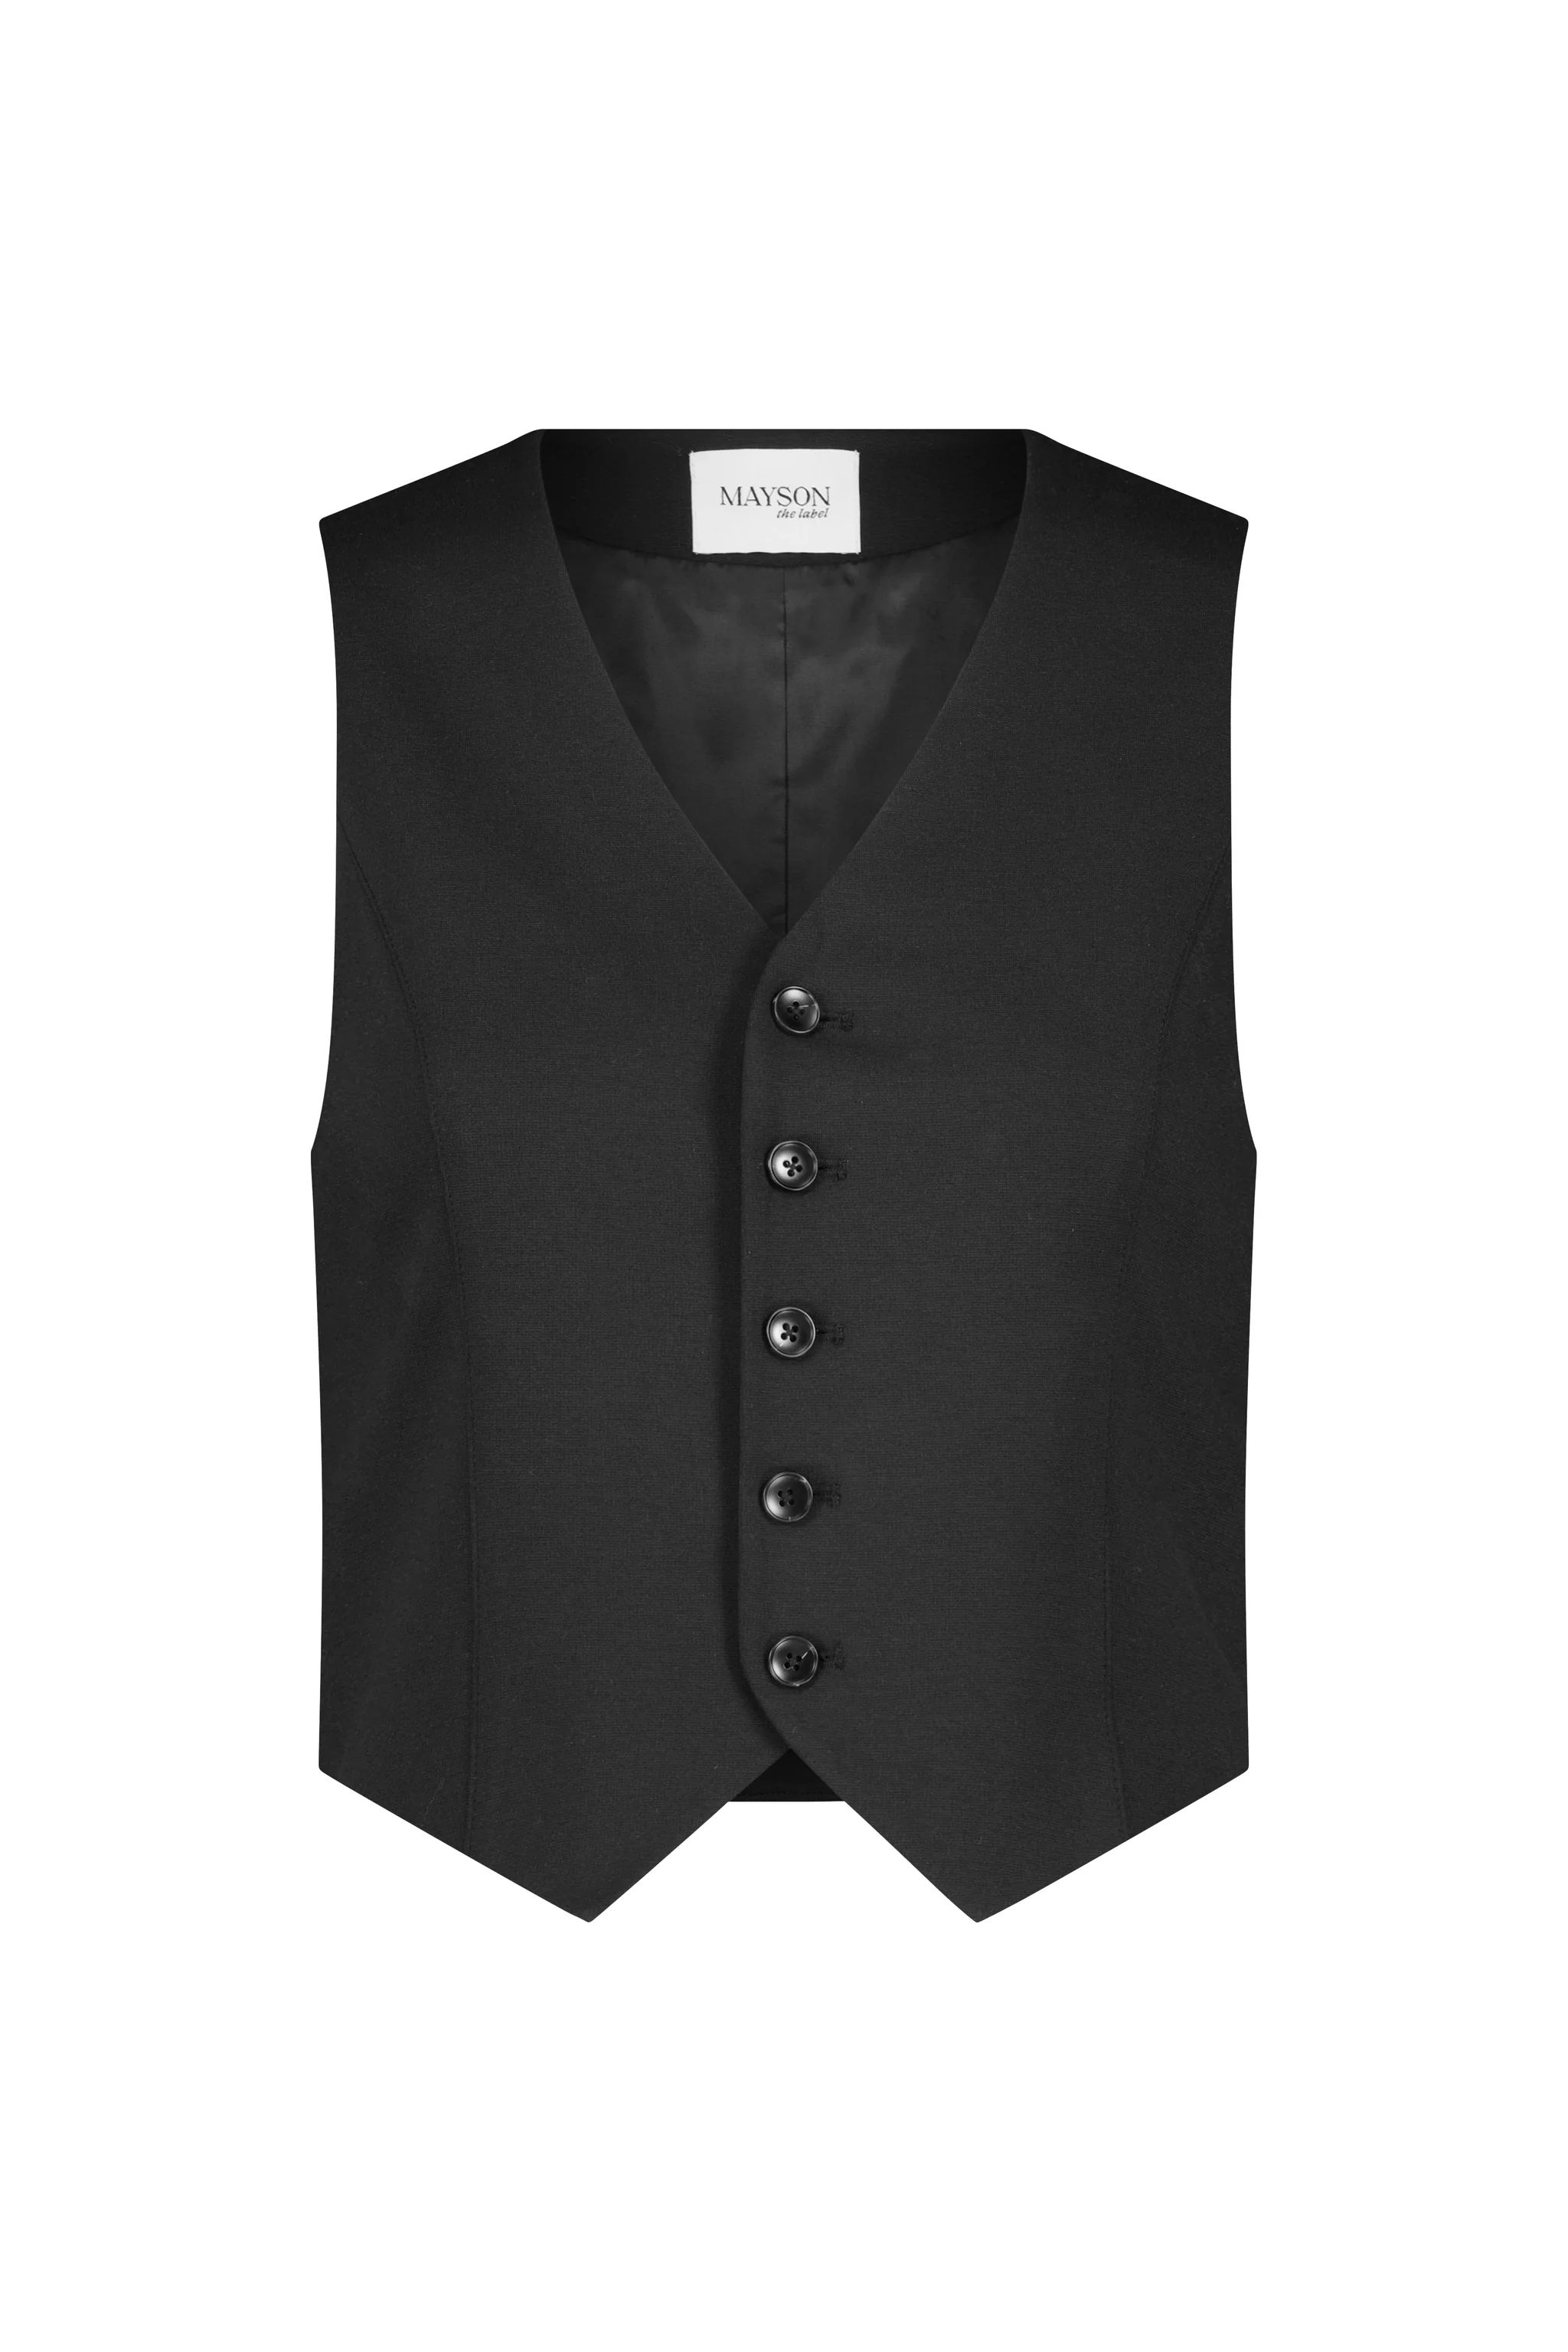 Slim-Fit Button-Front Vest | MAYSON the label